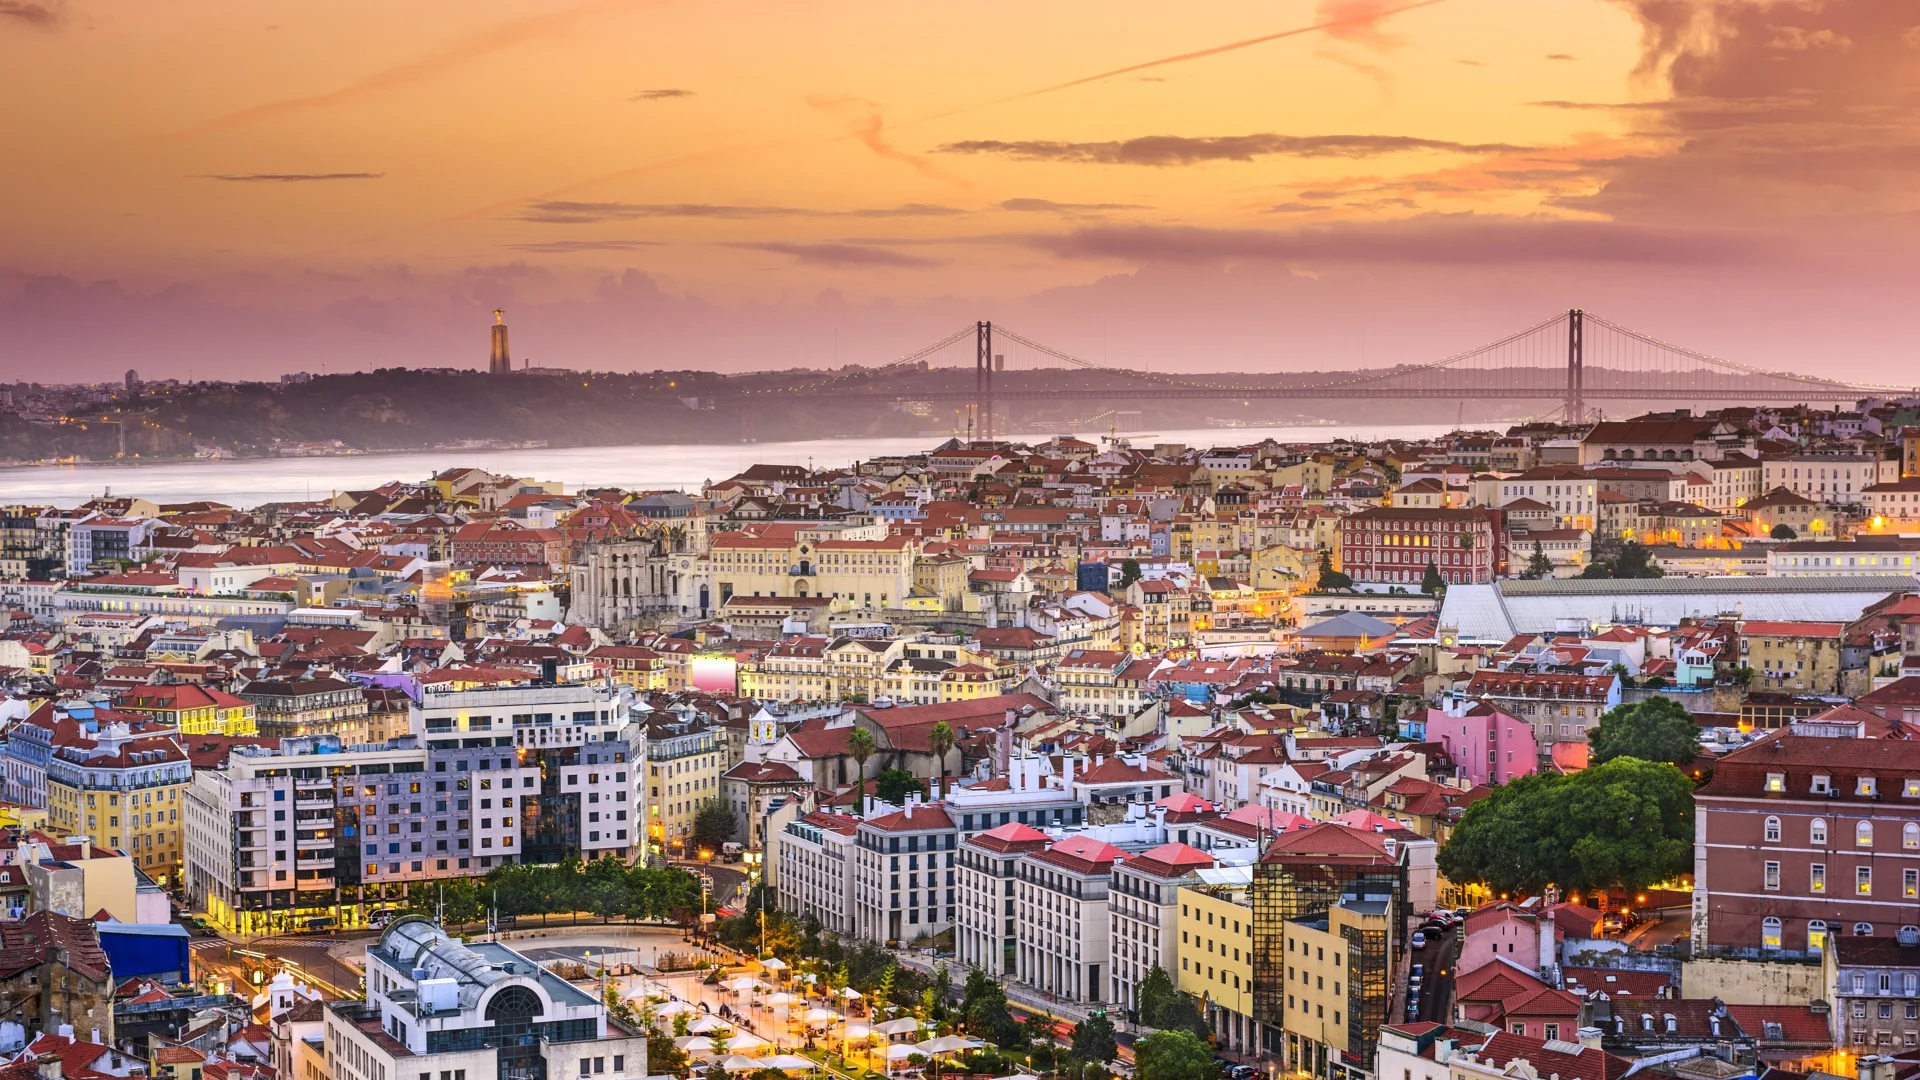 Португалия: Икономически бум, но хората се недоволни. Защо?